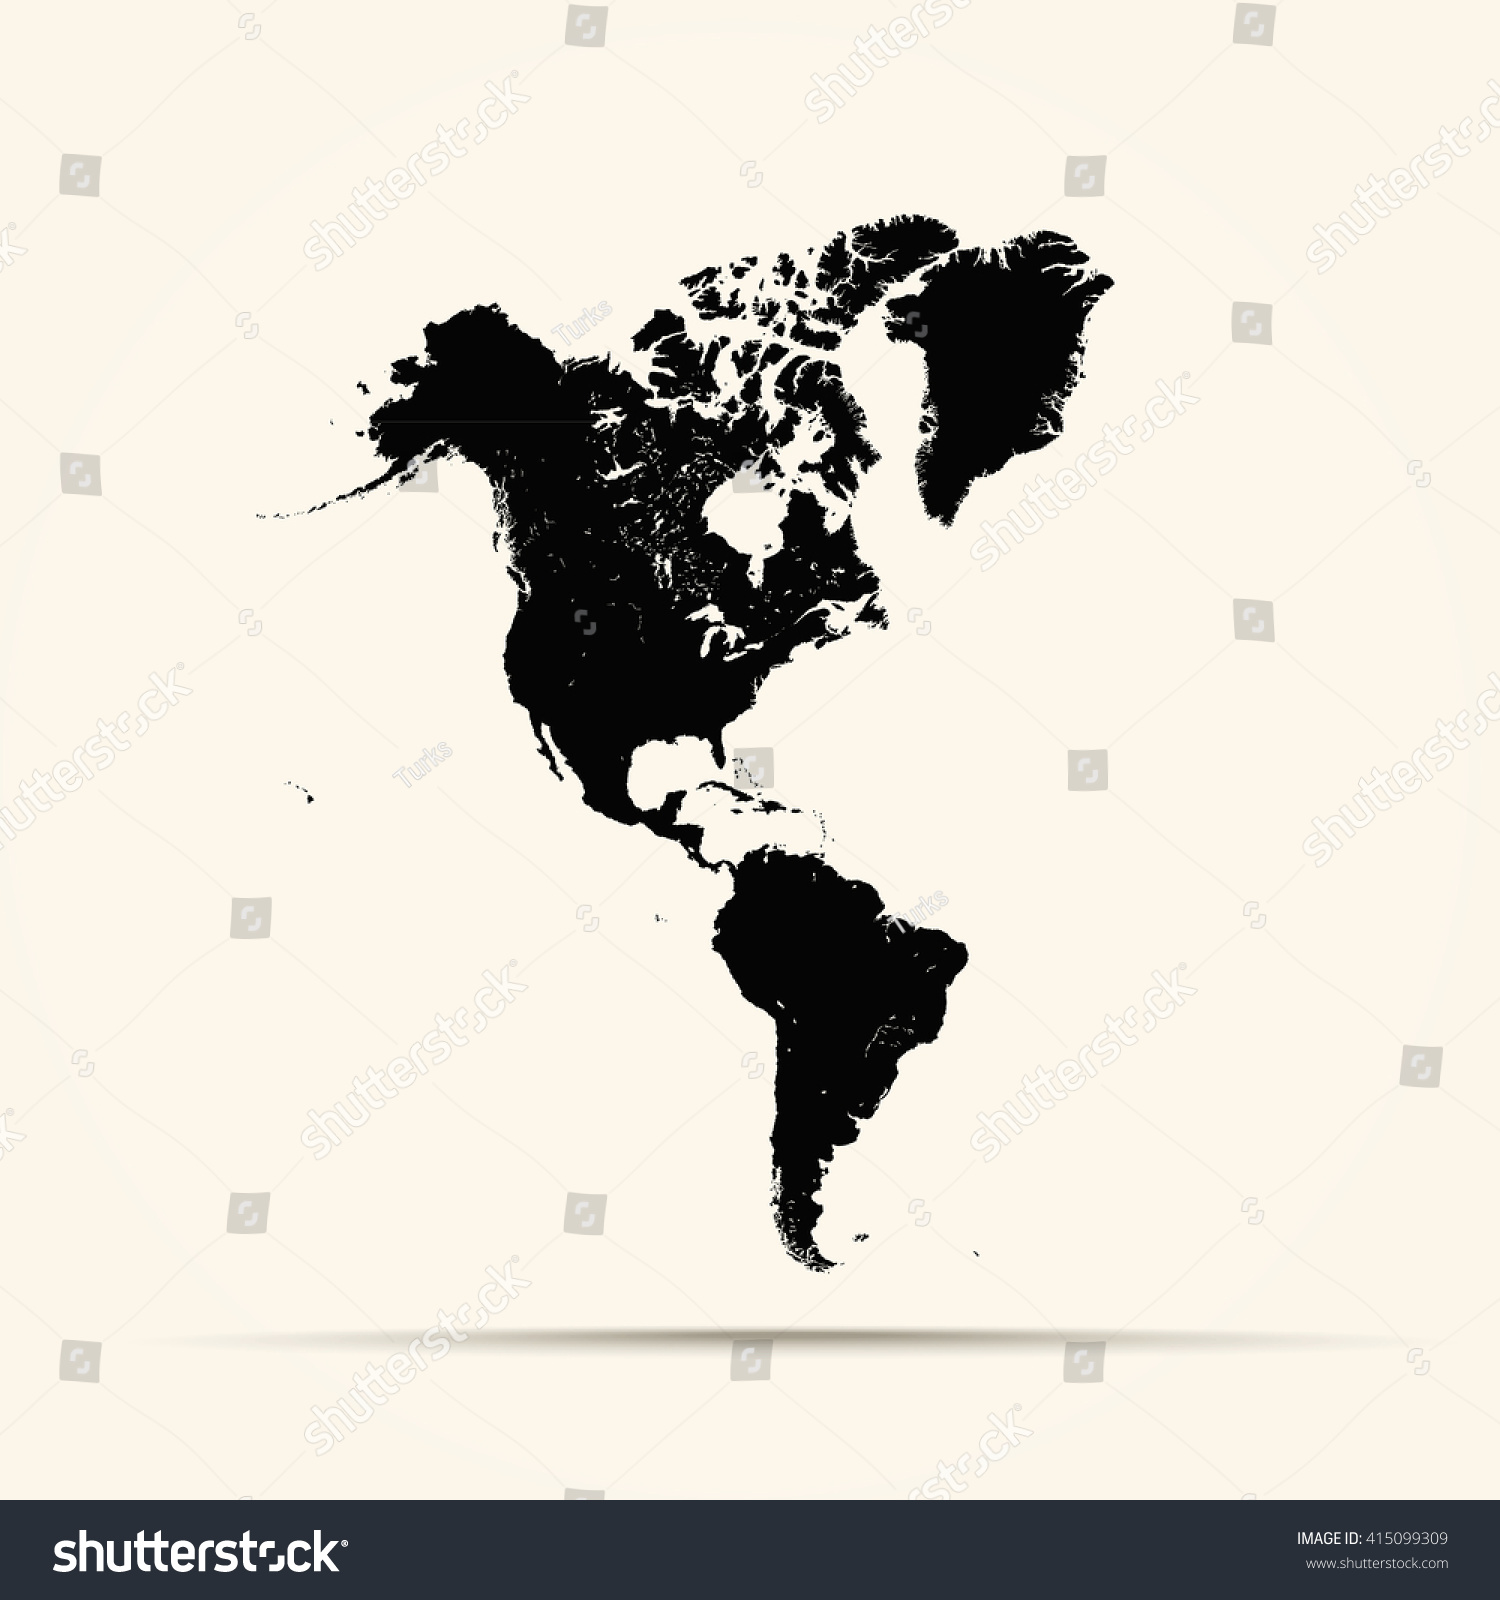 Vektor Stok Black America Map Illustration Tanpa Royalti 415099309 Shutterstock 6843